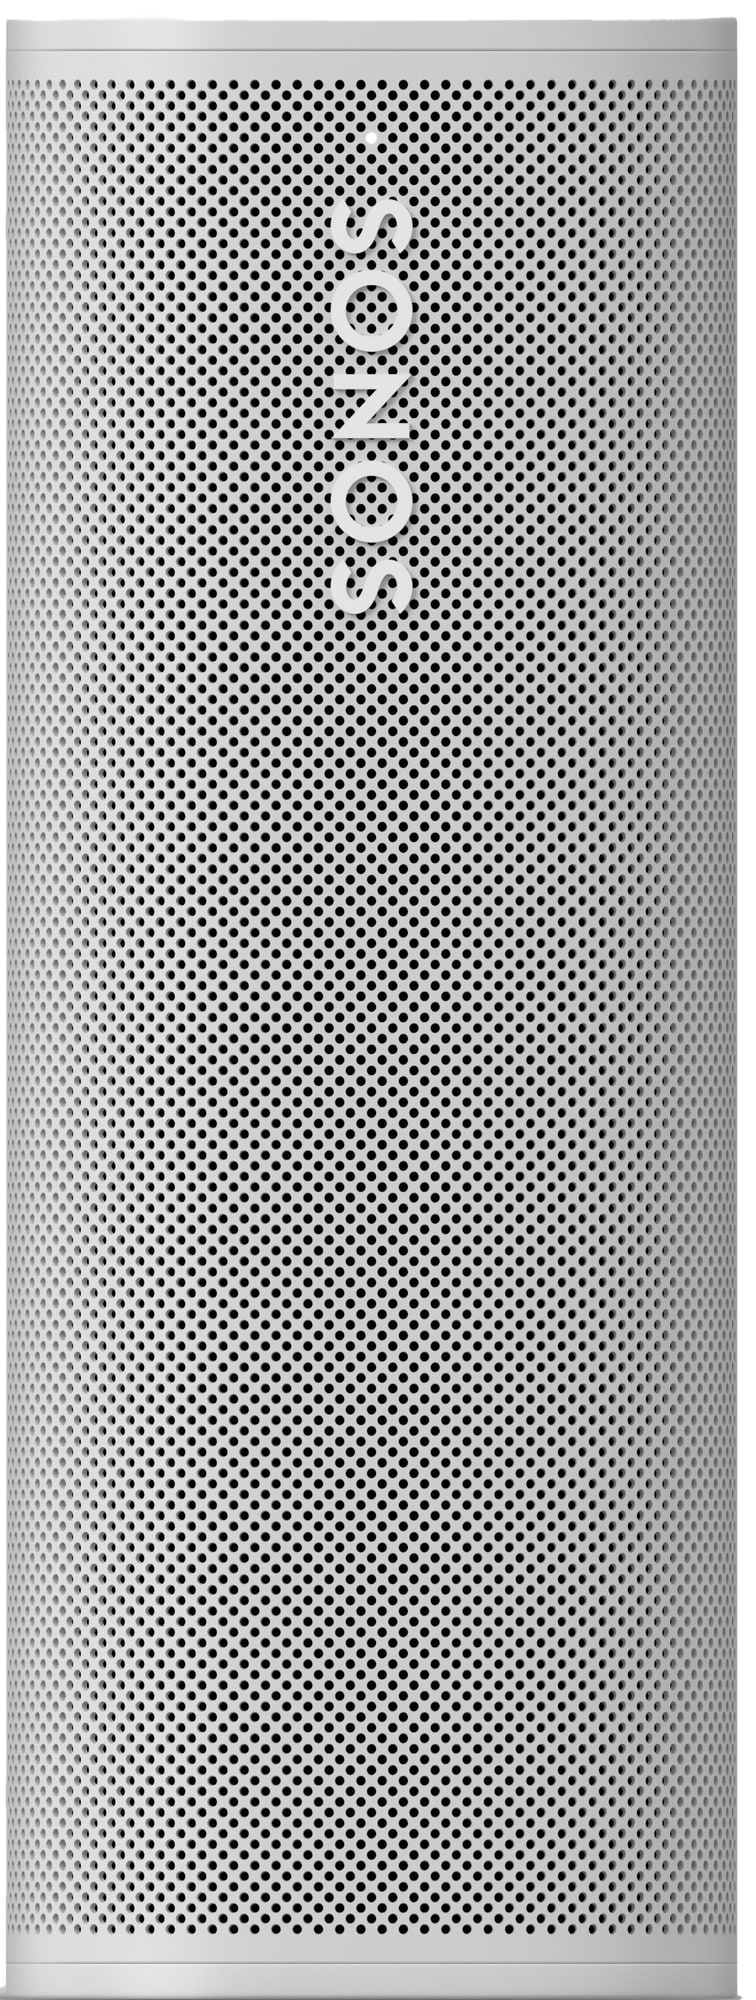 Sonos Roam SL trådlös portabel högtalare (vit) - Elgiganten